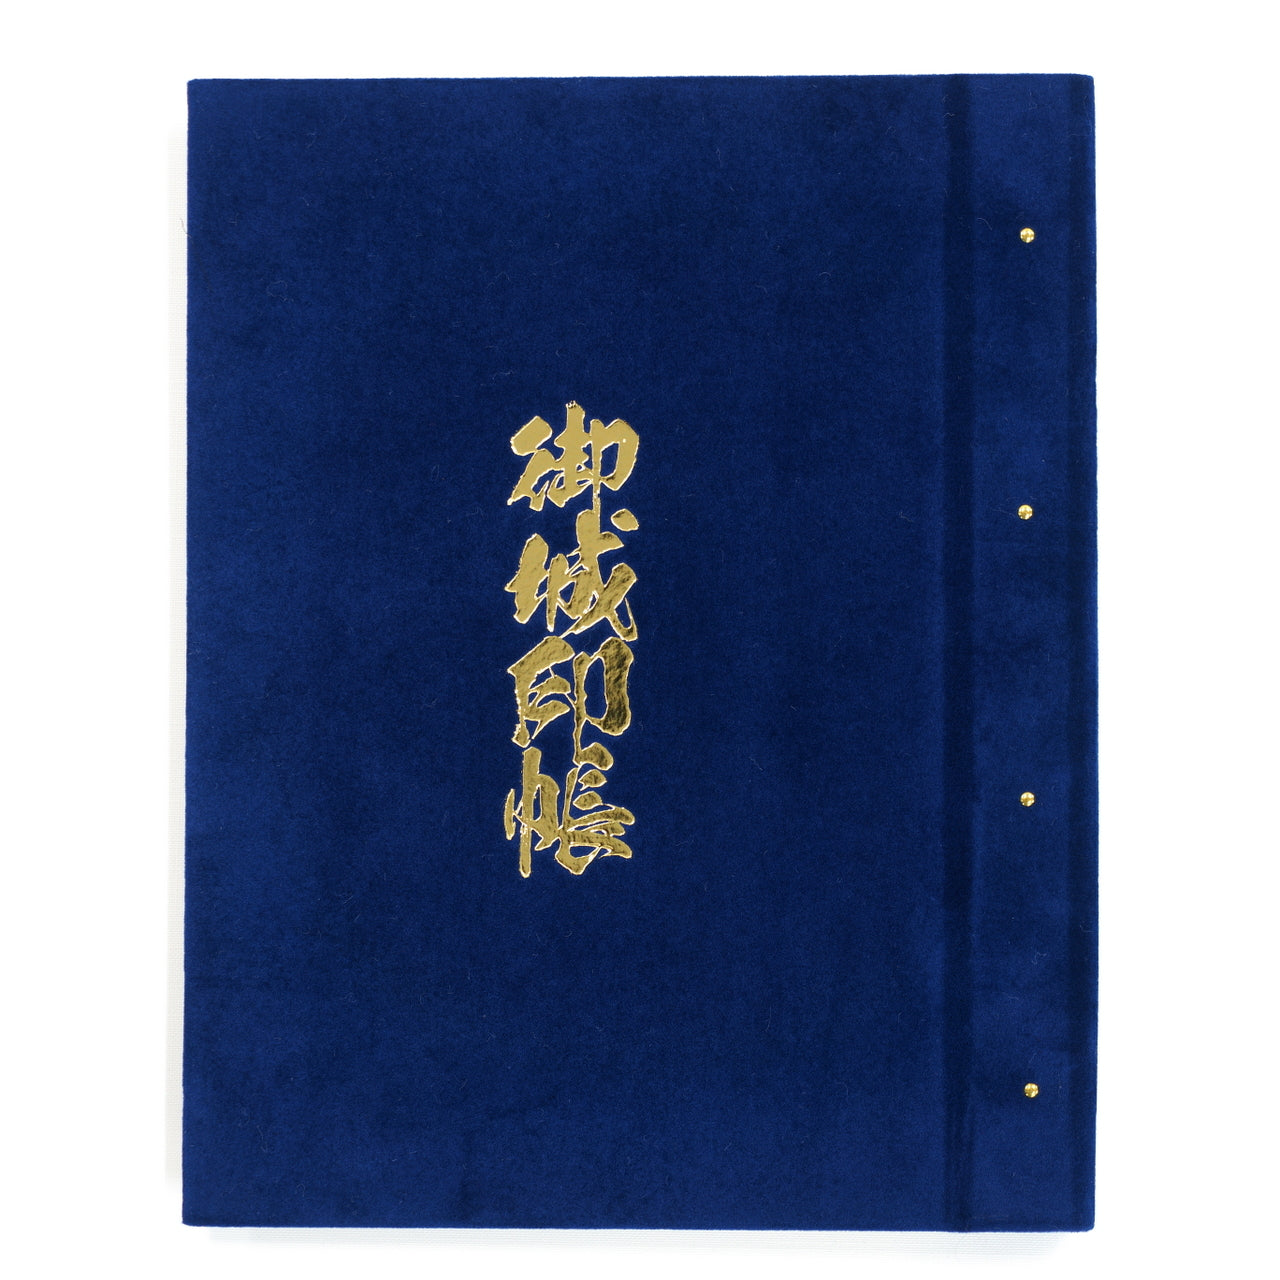 Gojo Seal Book “Velvet” Navy Blue